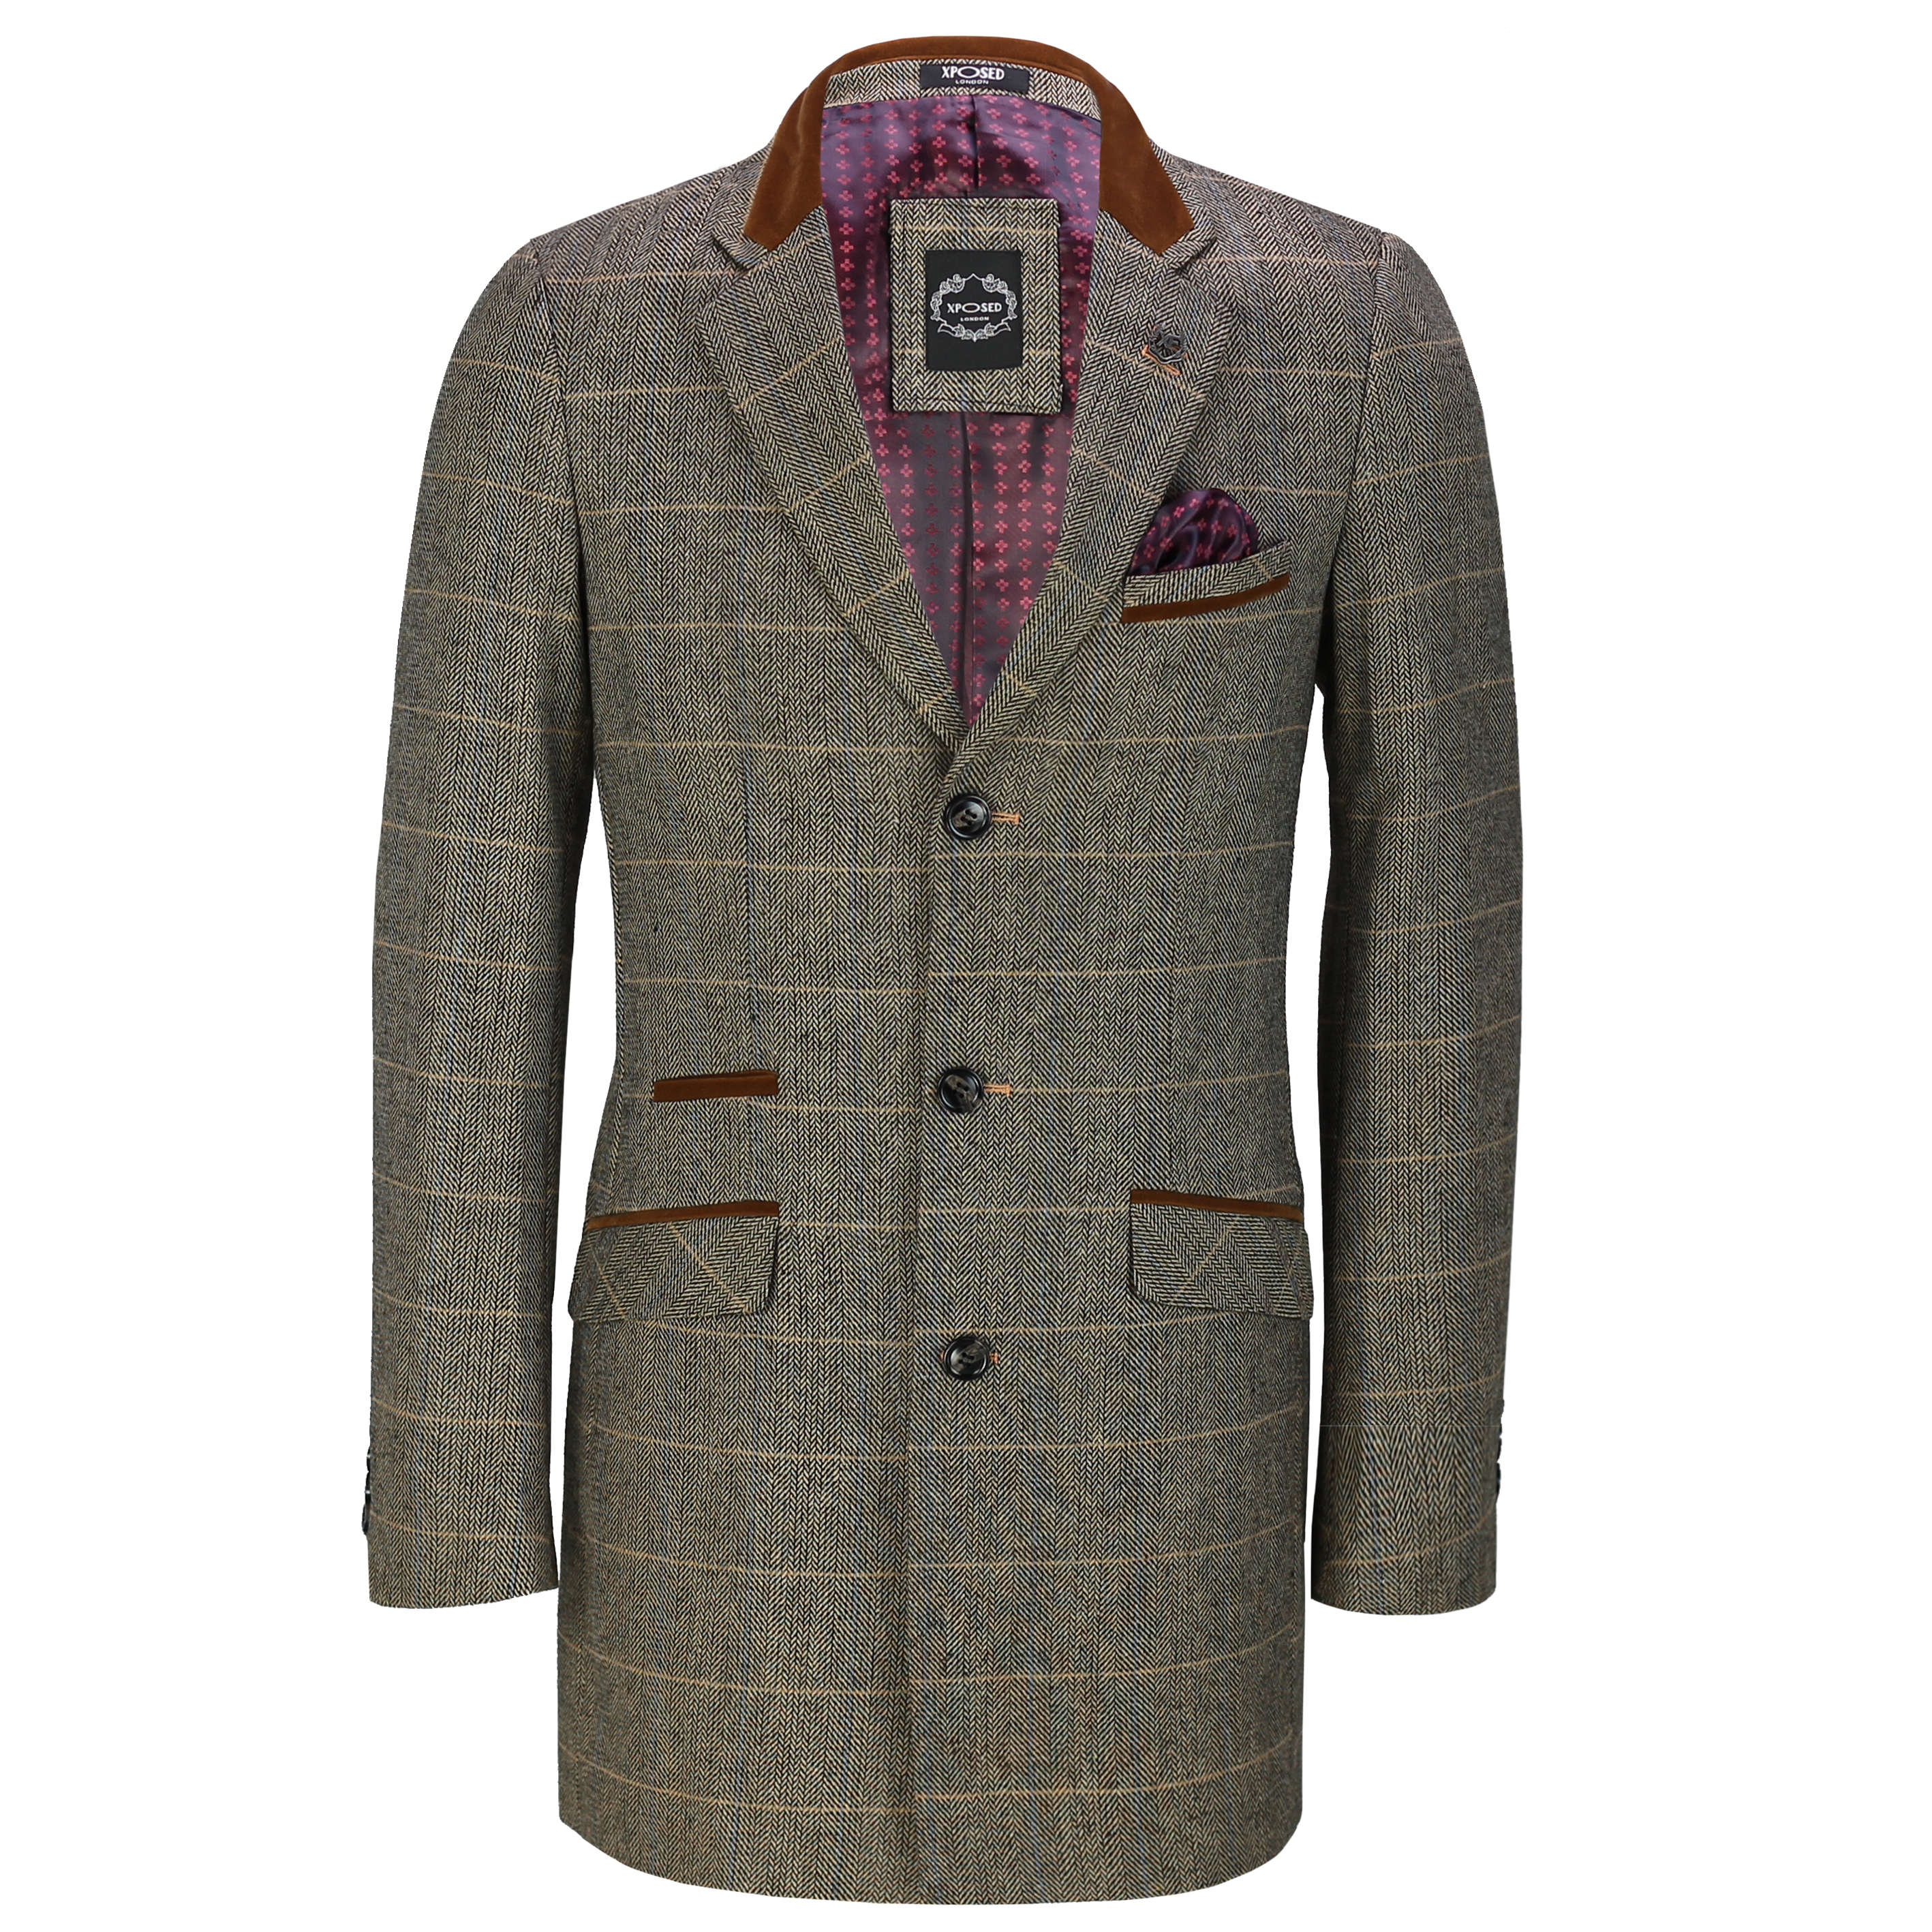 Check herringbone tweed jacket Berlin fit - Regular, Le 31